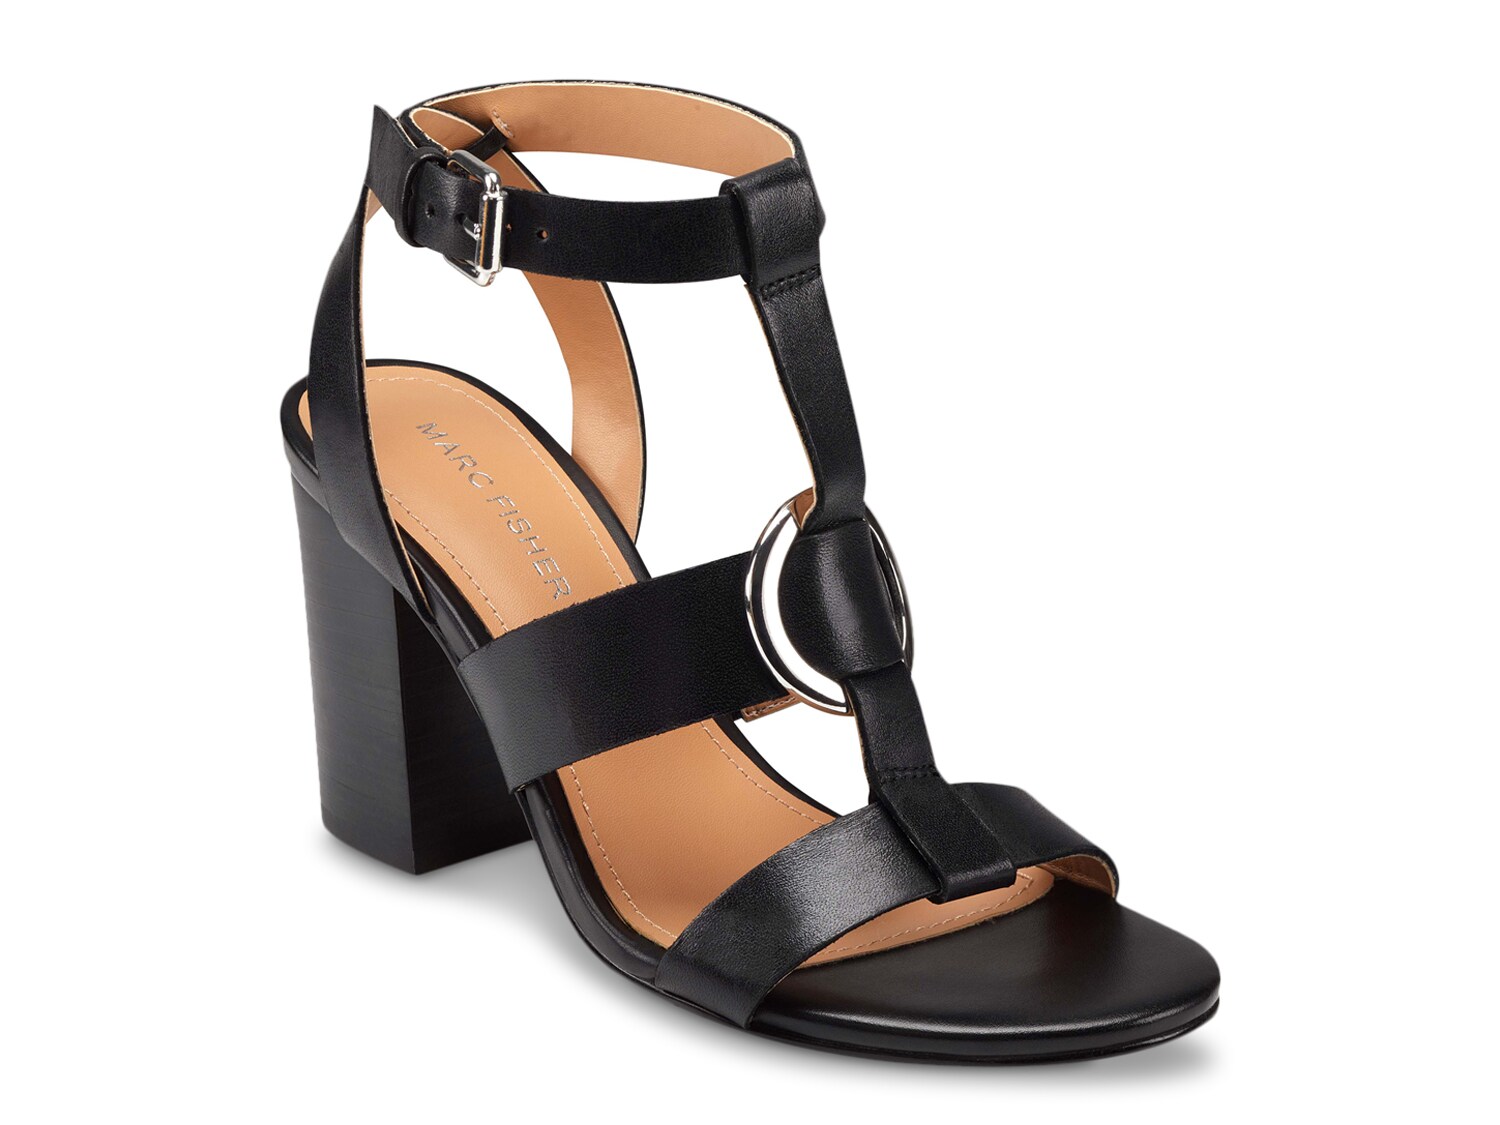 Black ankle strap heels | DSW